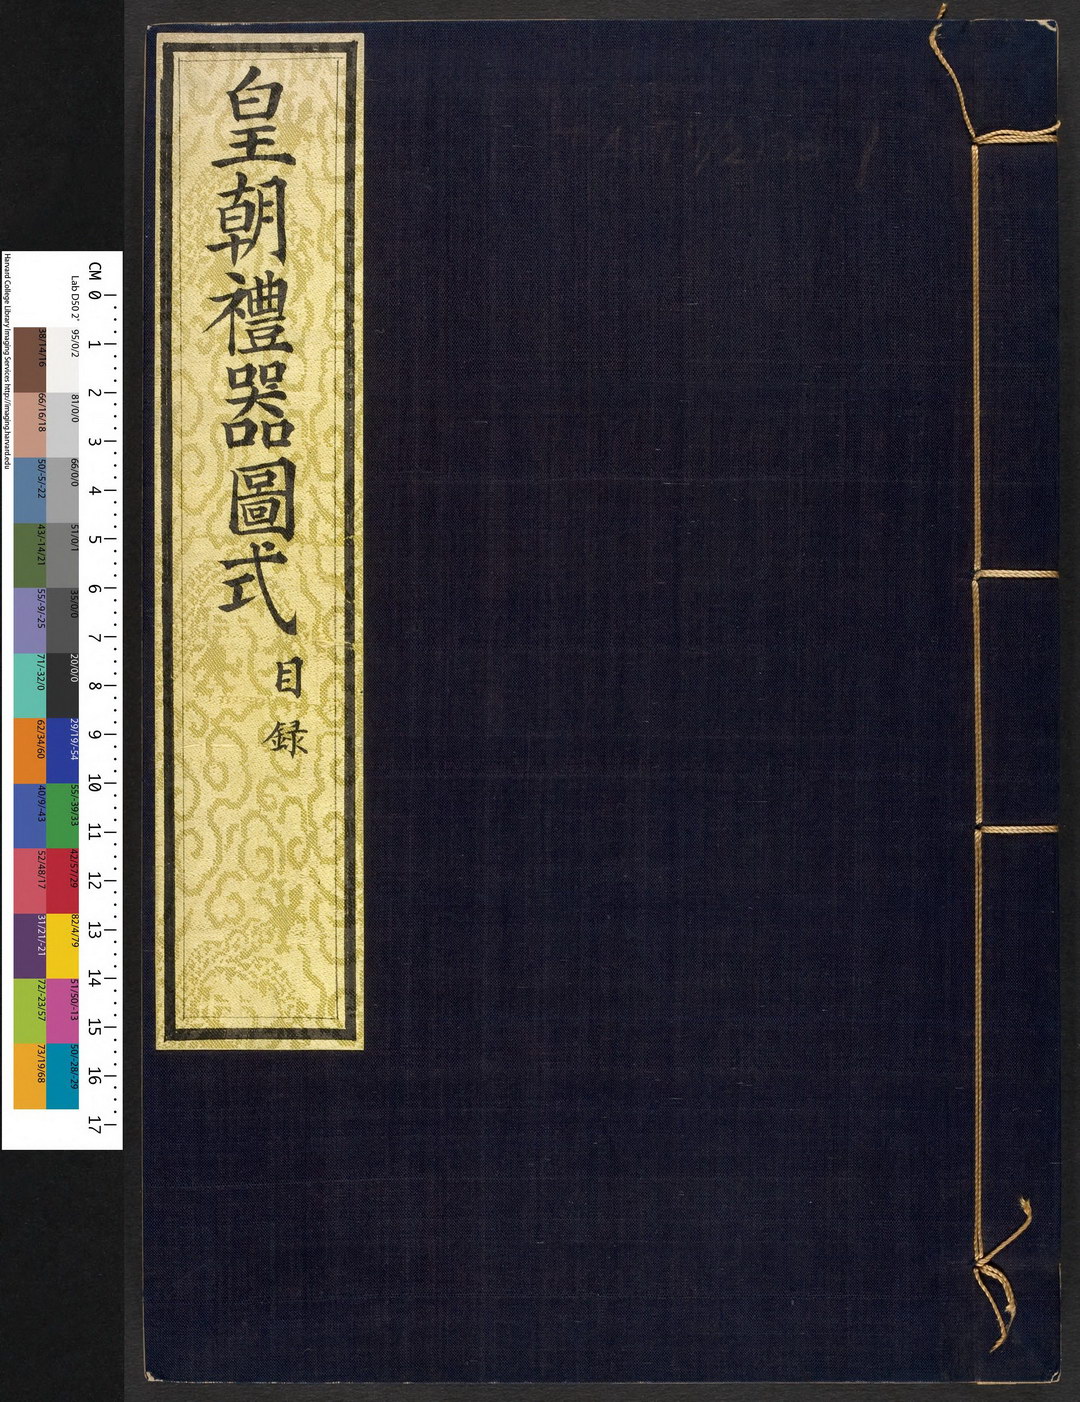 《皇朝礼器图式》宫廷典章制度类器物图谱